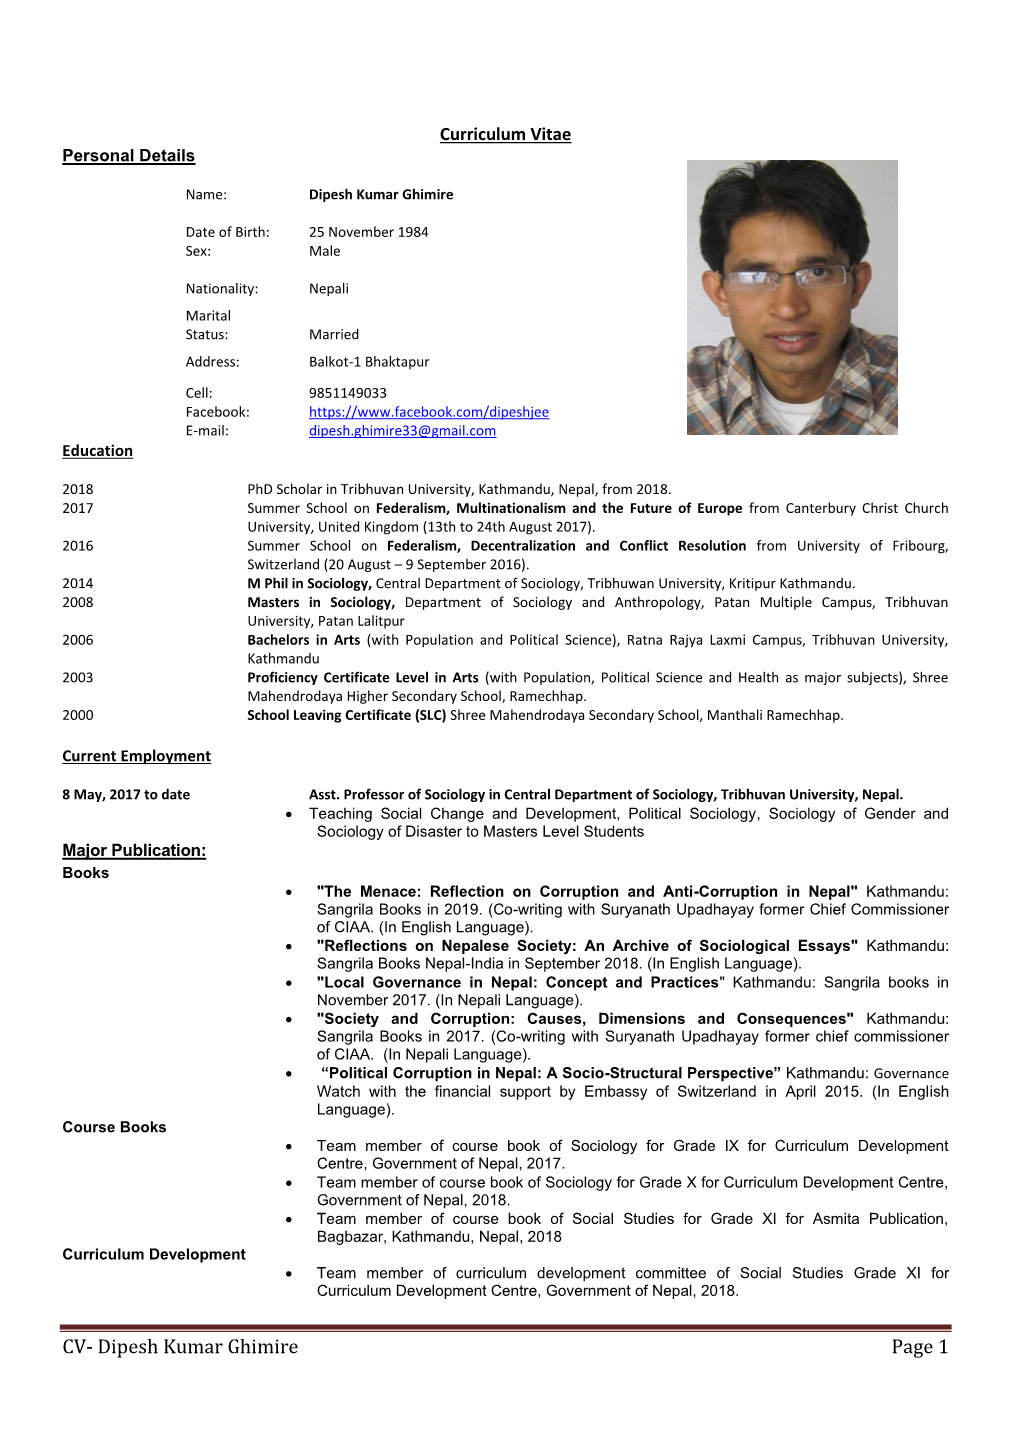 CV- Dipesh Kumar Ghimire Page 1